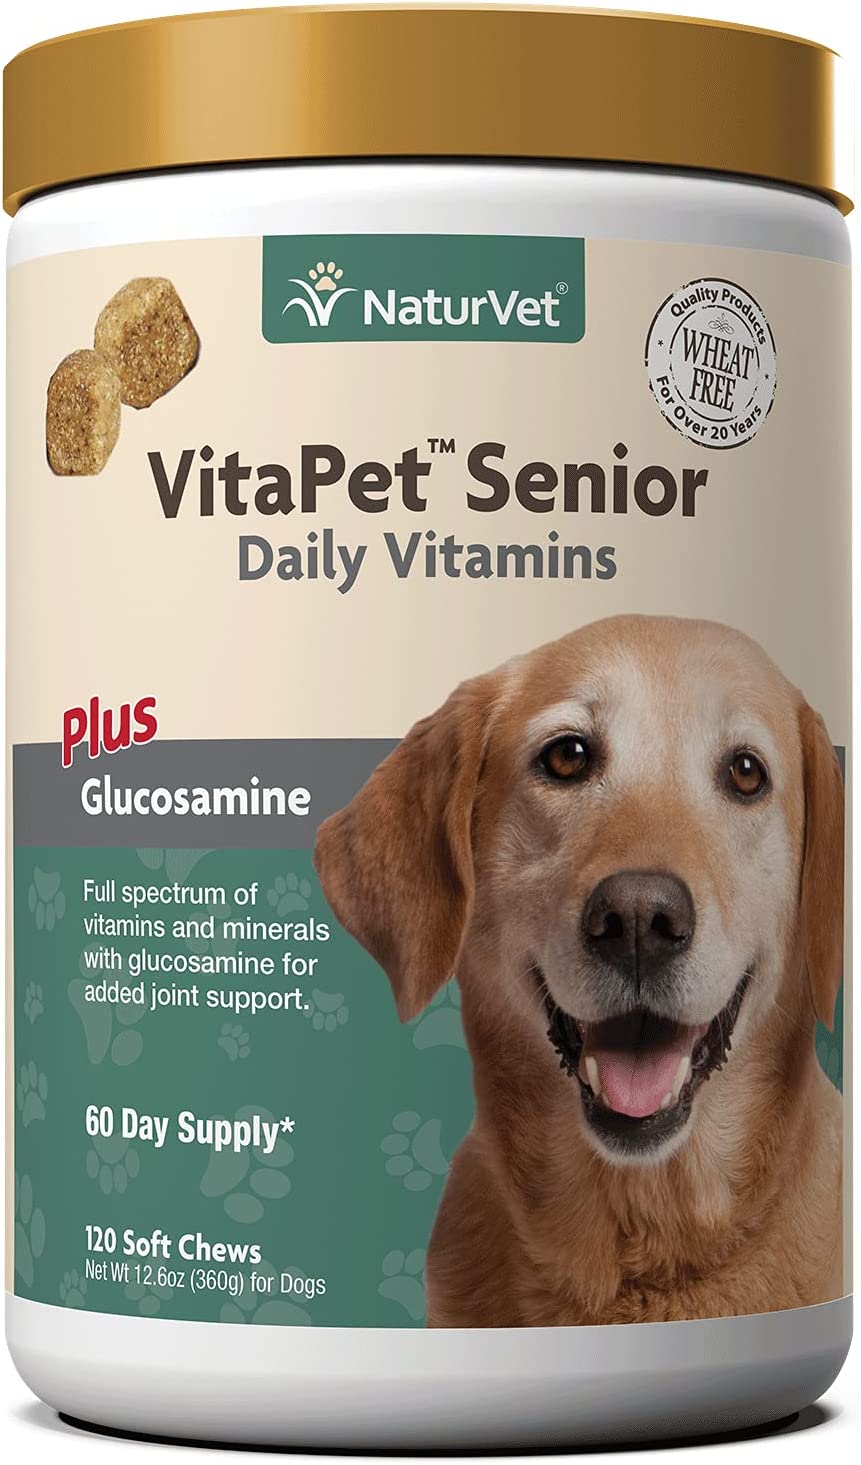 NaturVet VitaPet Senior Daily Vitamin Dog Supplements